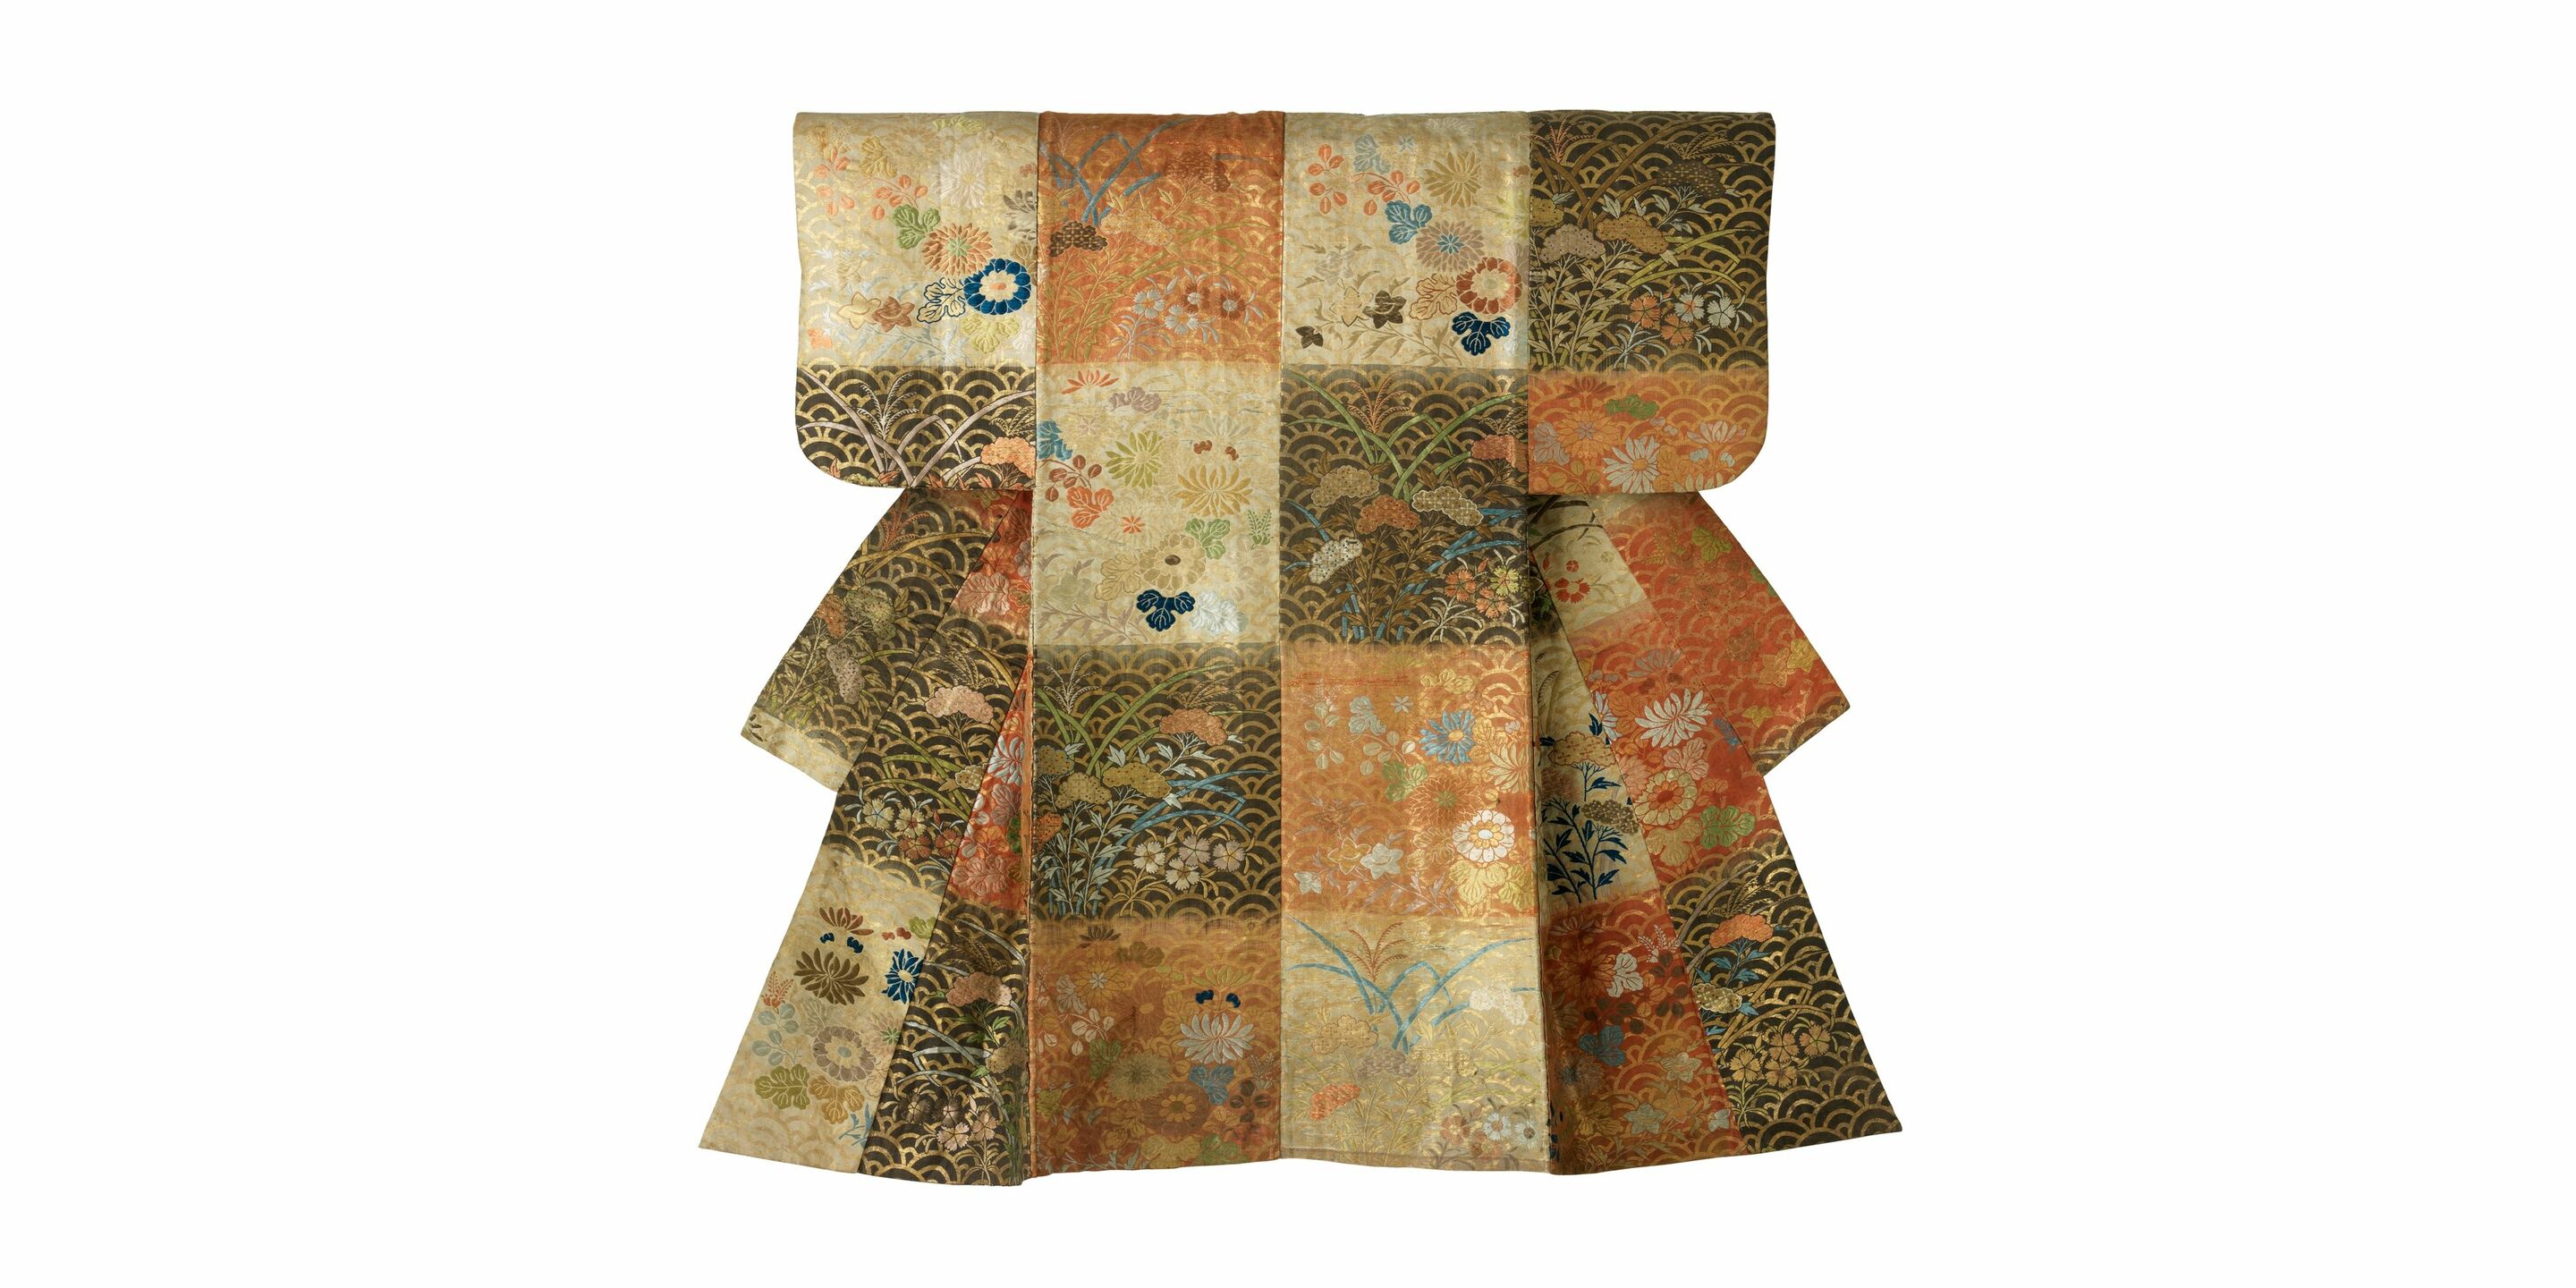 Robe de théâtre *nō*, Japon, fin du XVIII^e siècle – début du XIX^e siècle. © © musée des Tissus – Pierre Verrier